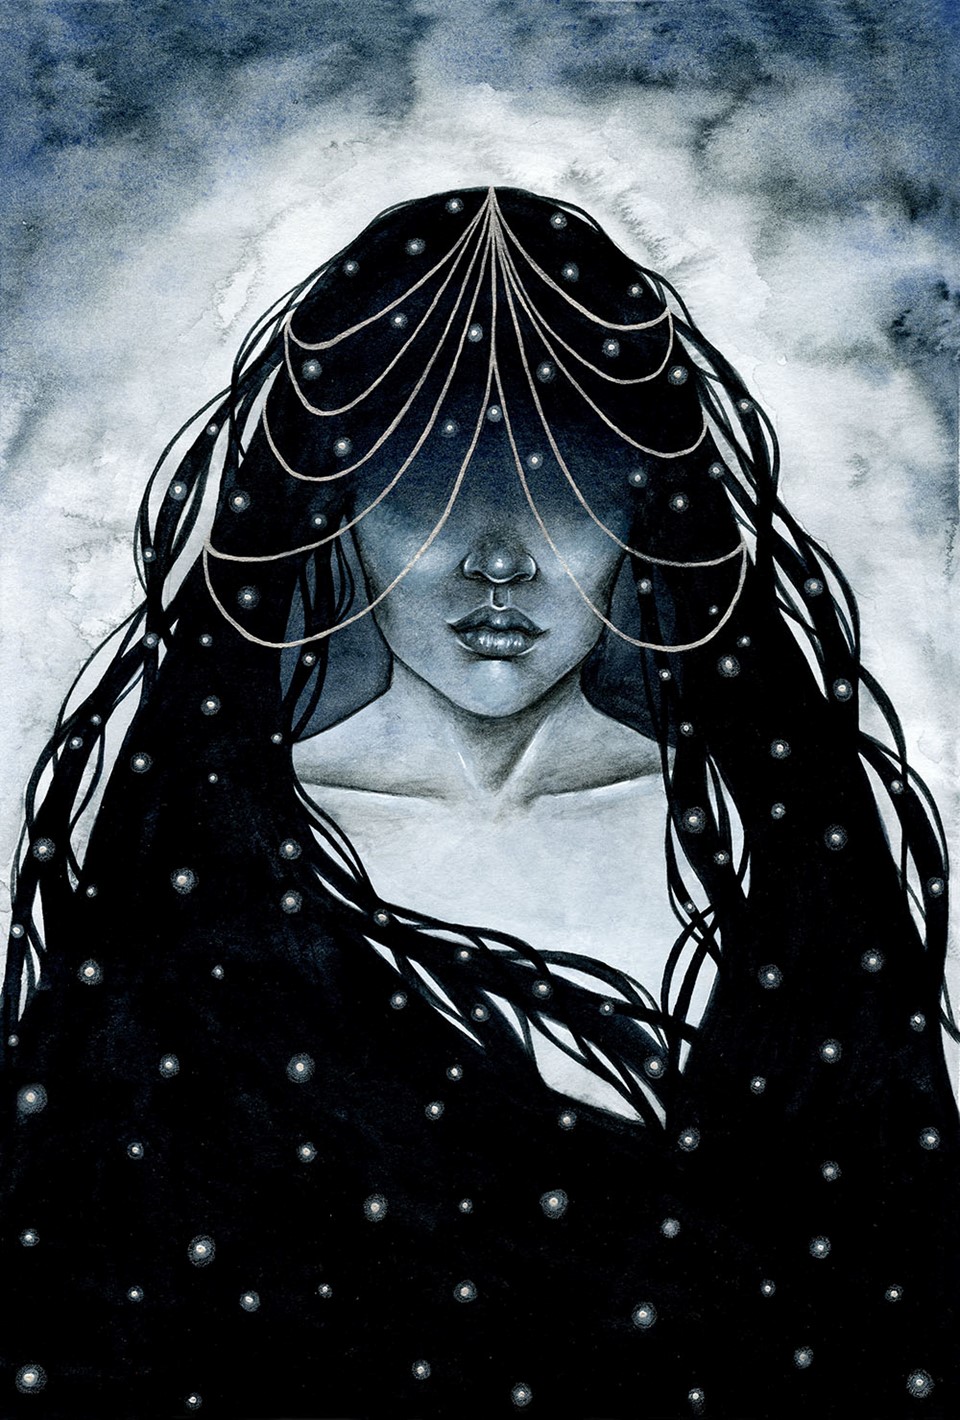 Monochrome Starlit Illustration by Artist Holly Khraibani